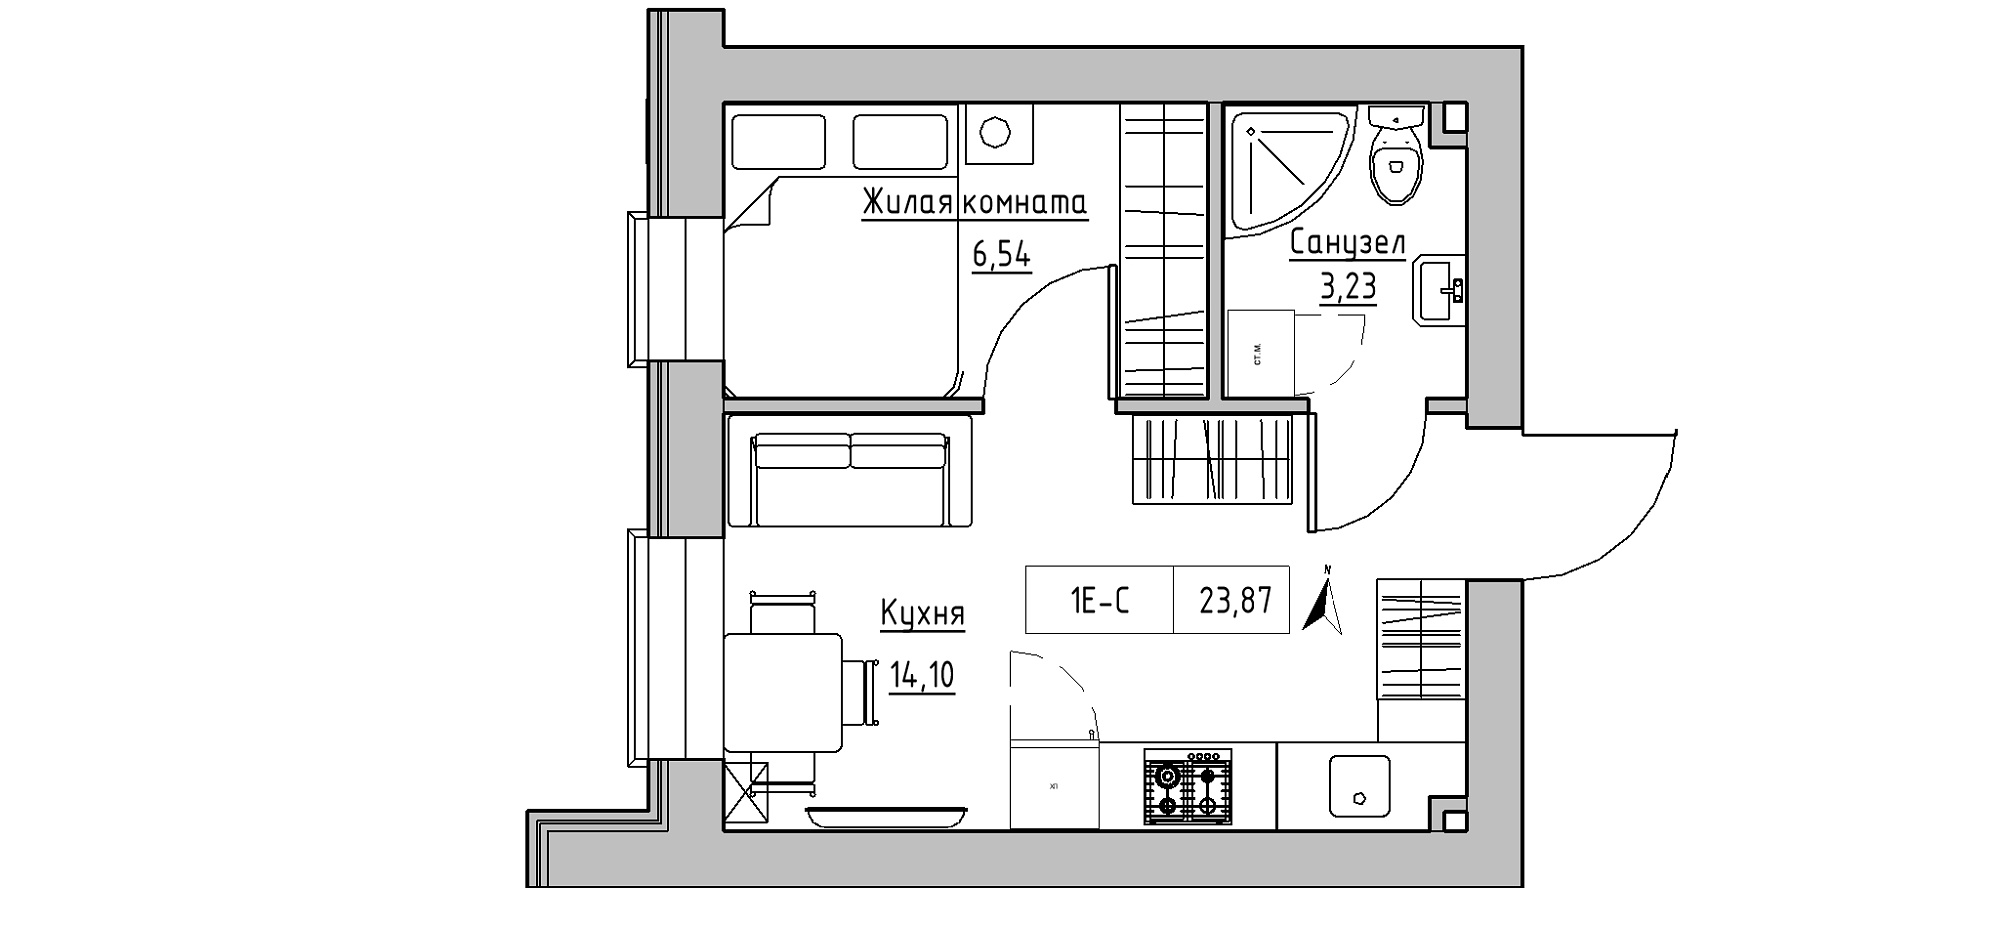 Планировка 1-к квартира площей 23.87м2, KS-020-04/0012.